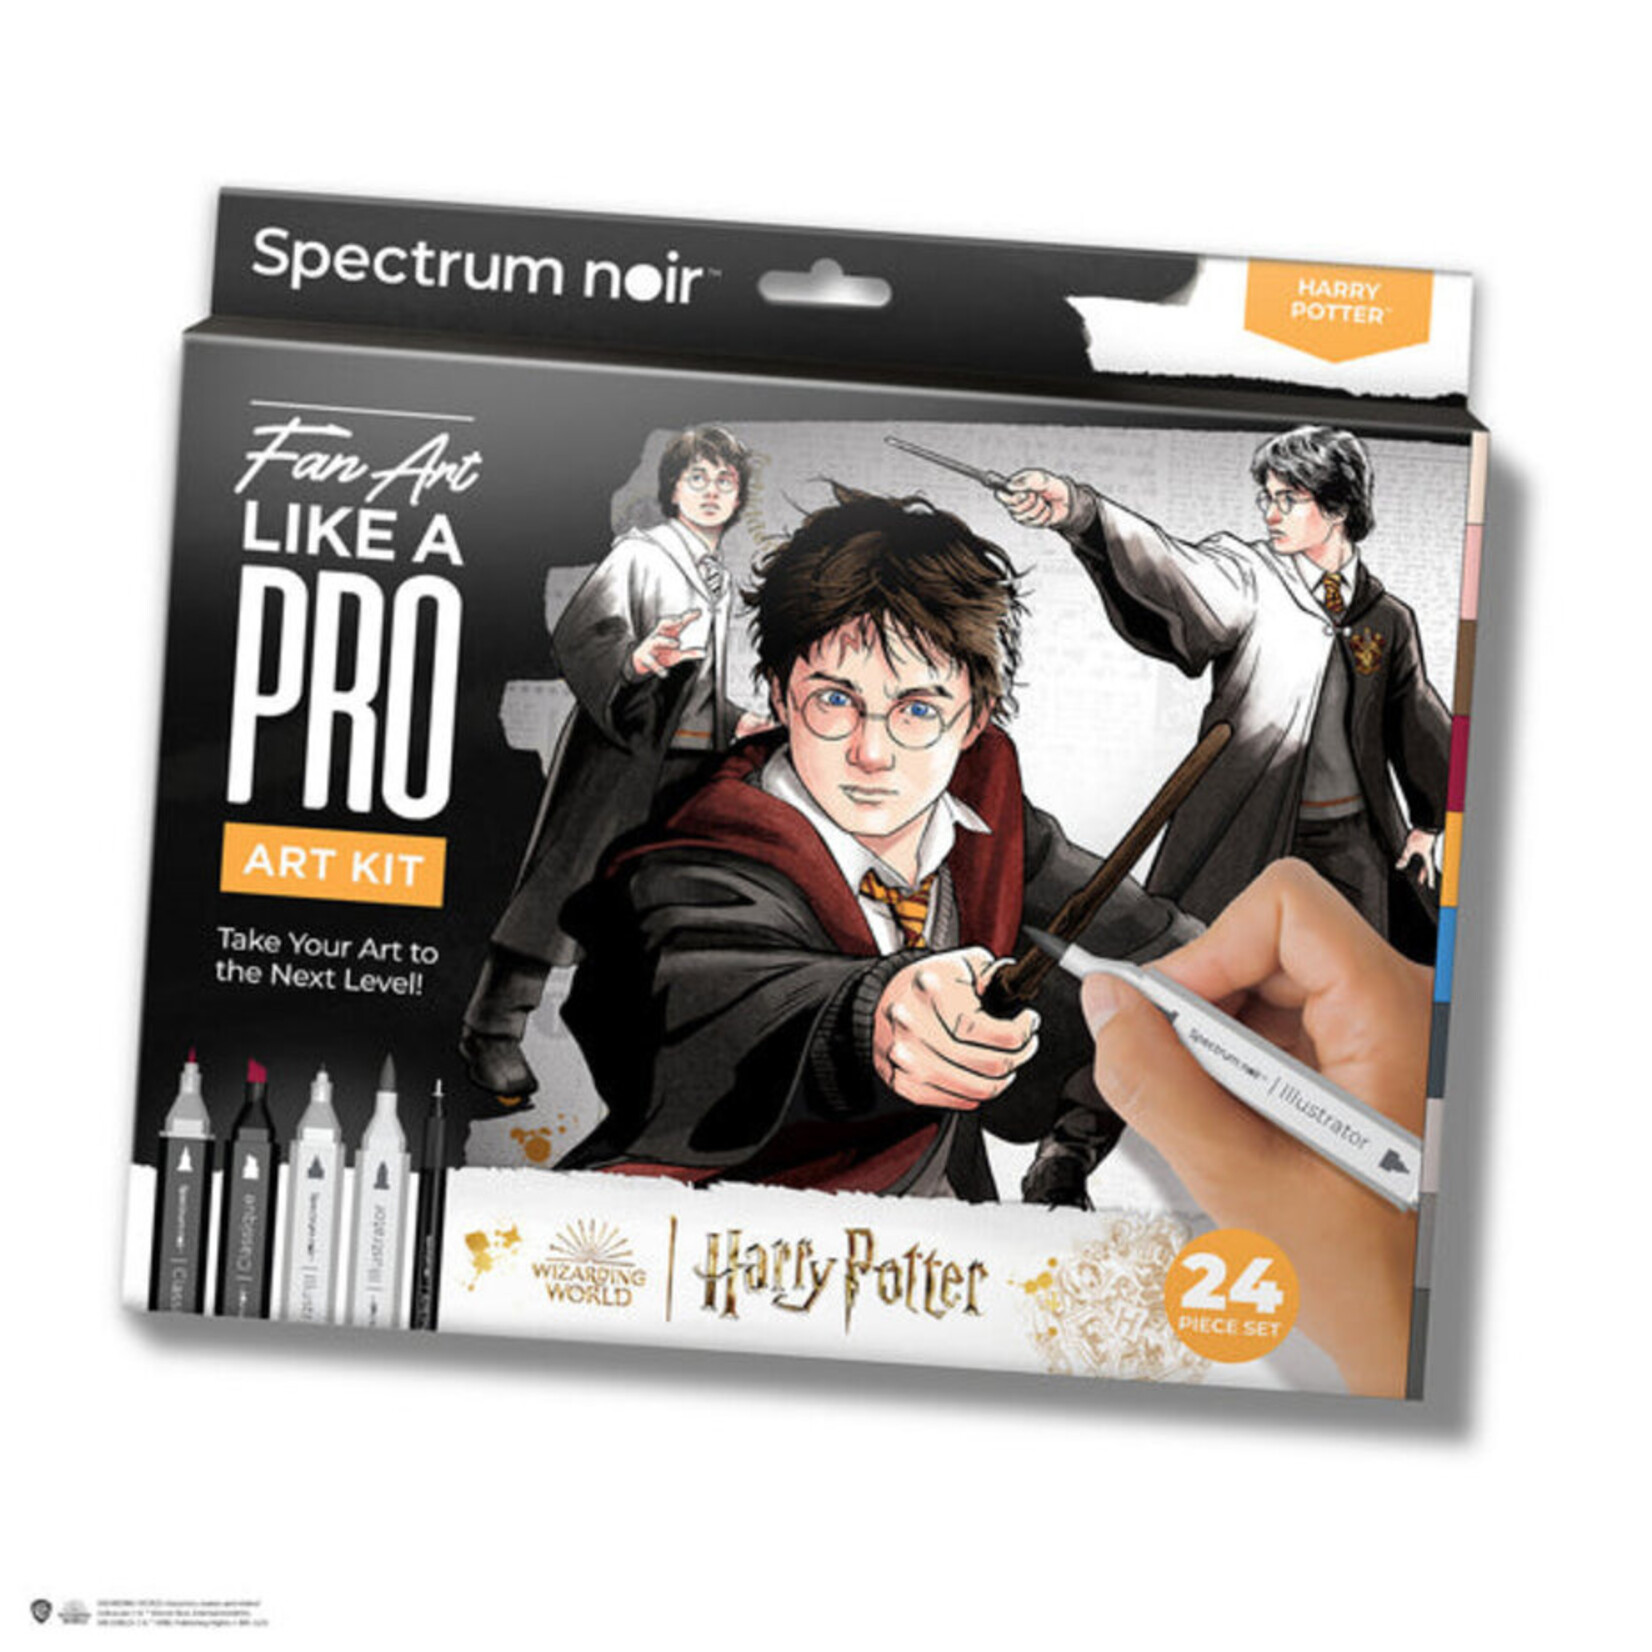 Spectrum Noir Spectrum Noir Harry Potter Fan Art Like a Pro Kit Harry Potter 24 pcs